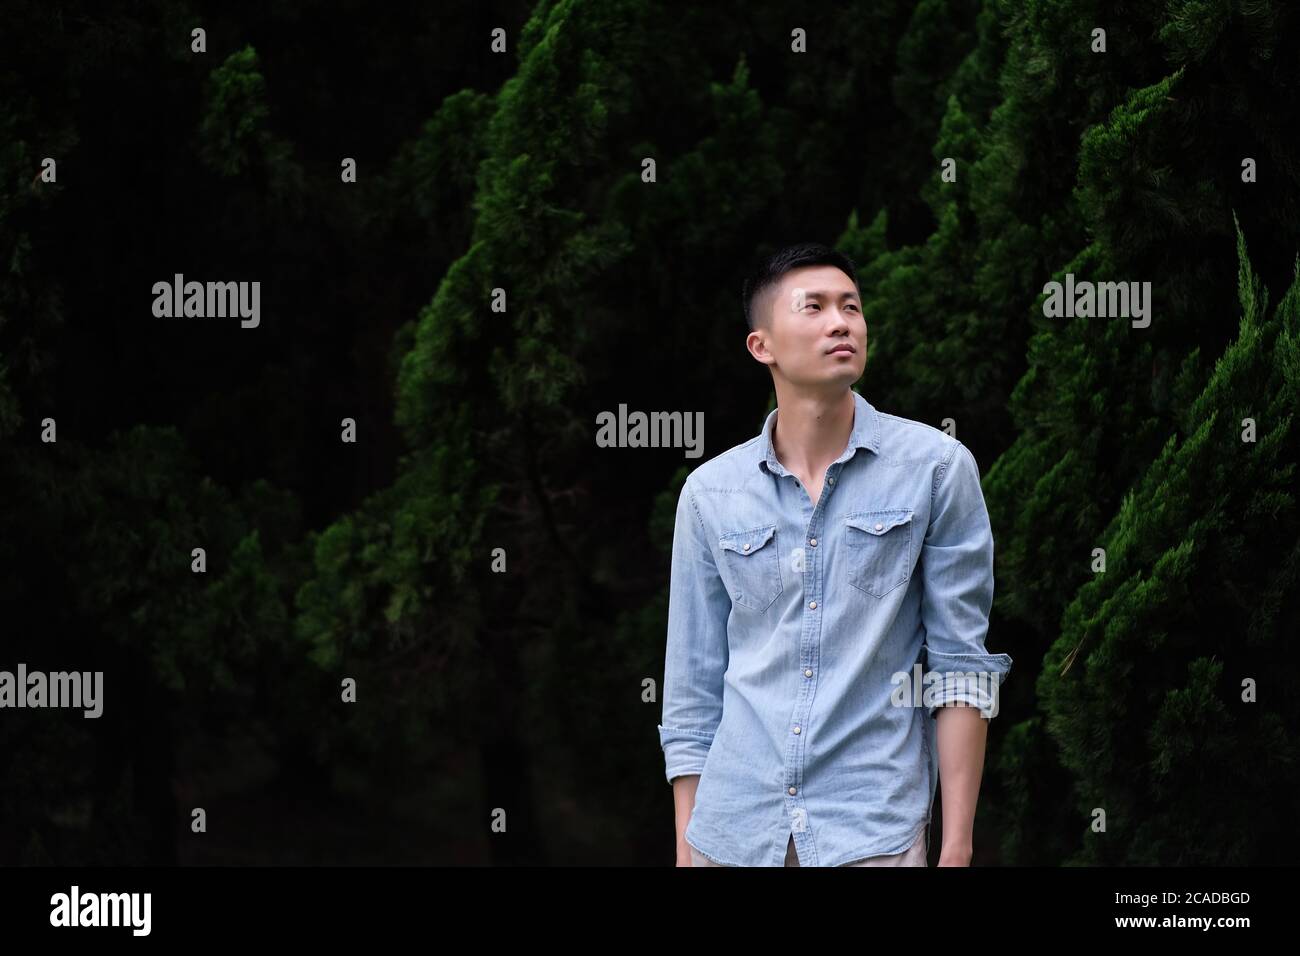 Un jeune asiatique en bleu teinté jeans chemise, debout devant des pins verts. Arrière-plan sombre flou. Banque D'Images